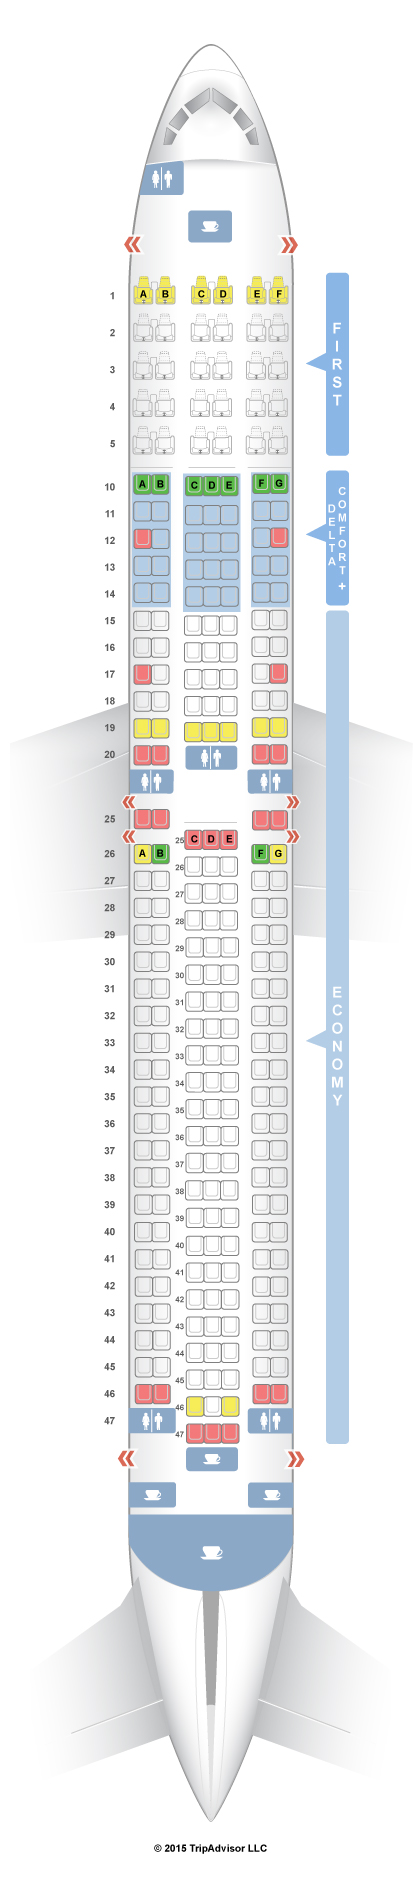 Lan 767 Seating Chart